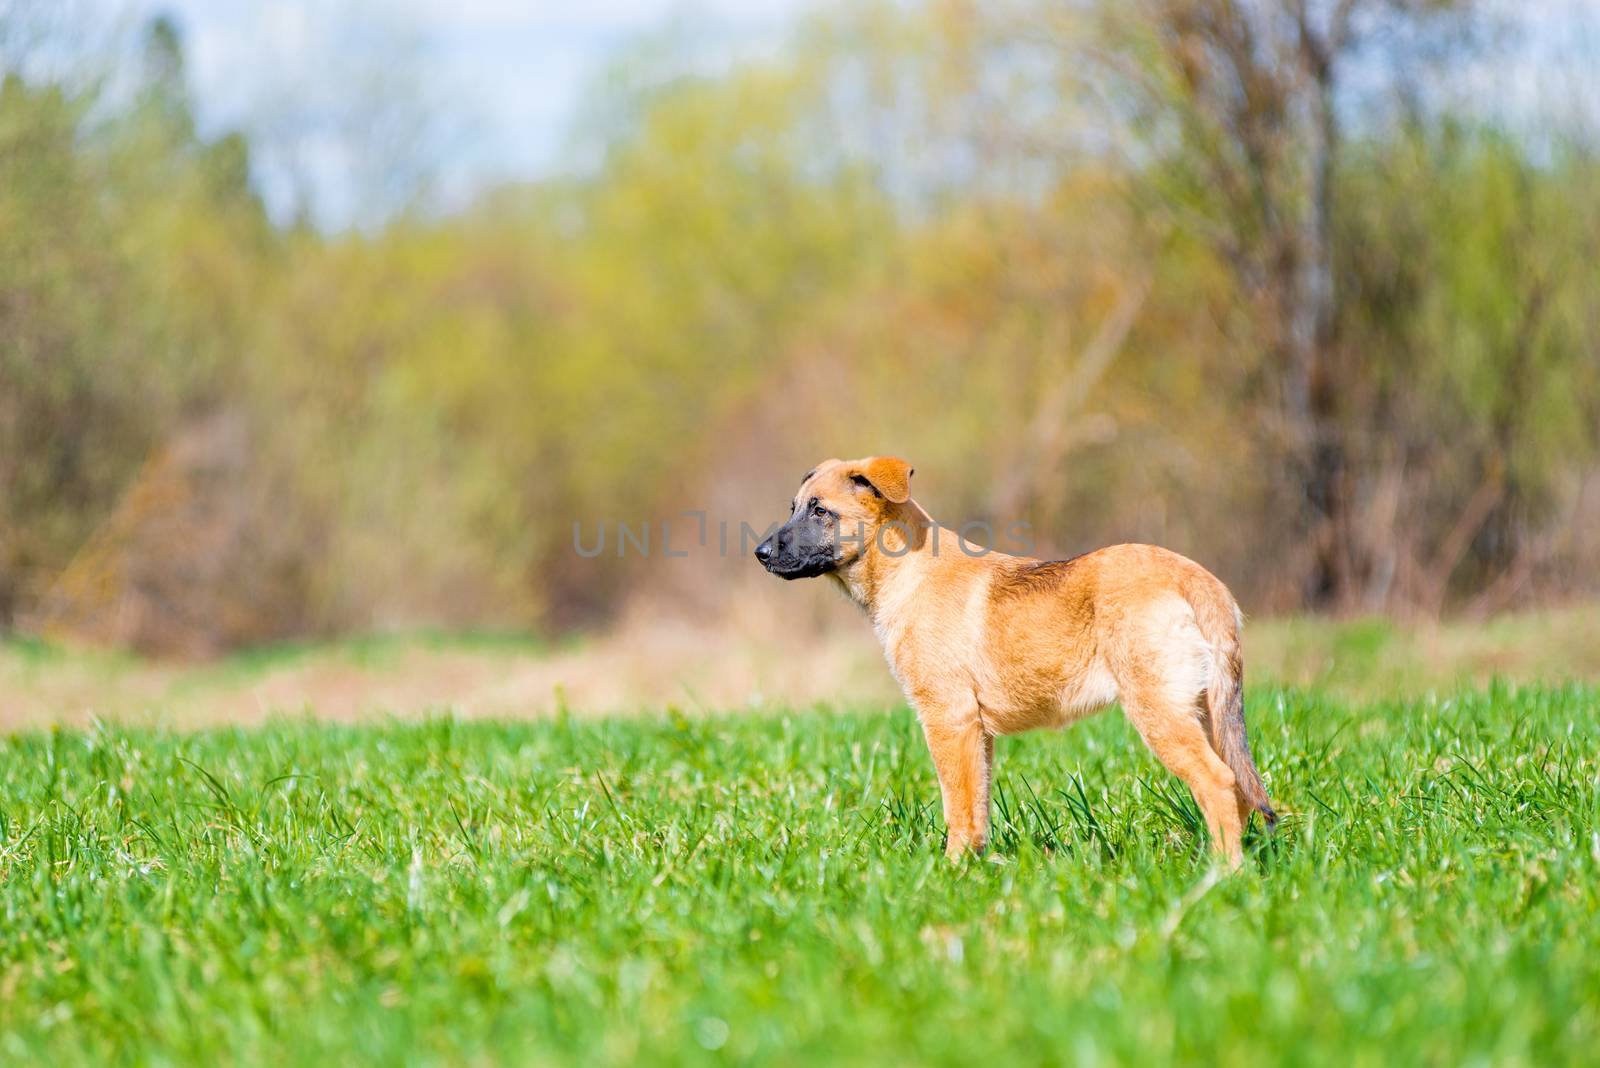 sideless puppy on lawn, side portrait